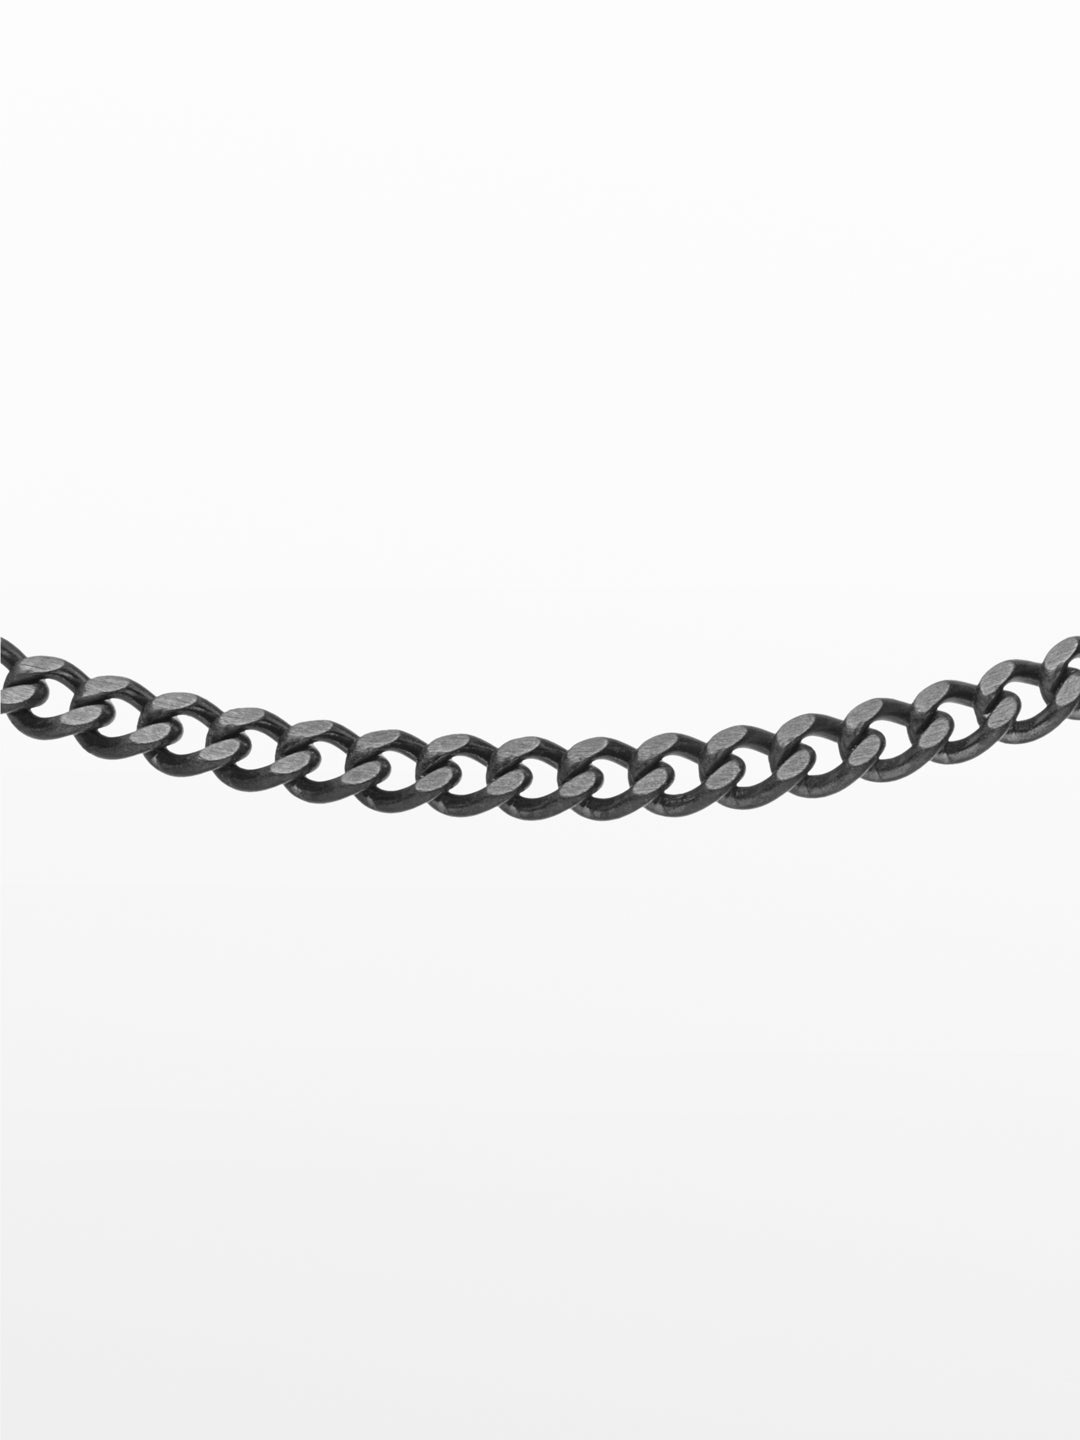 Link Necklace Black